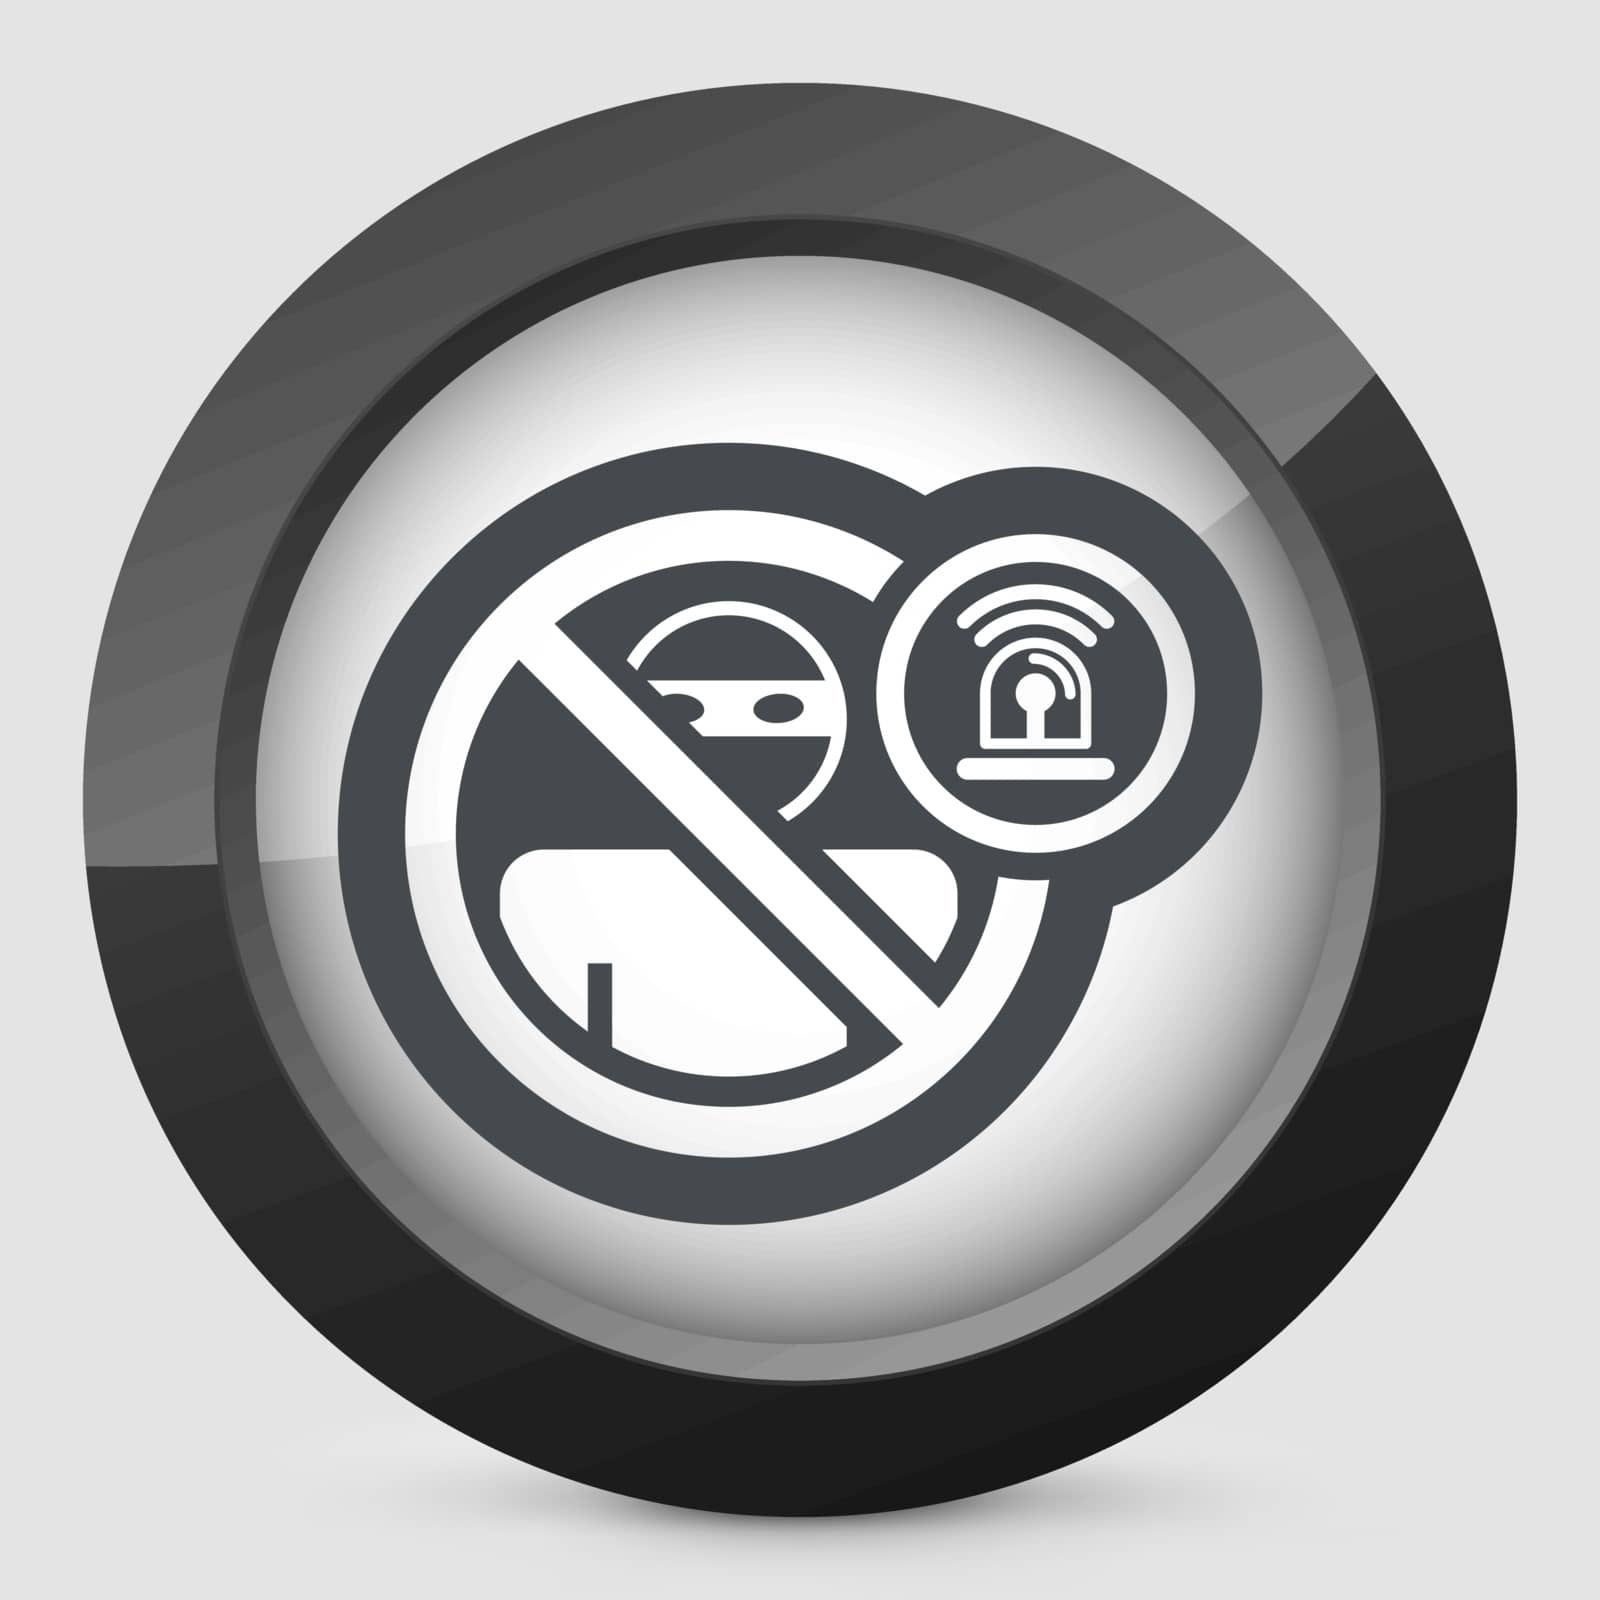 Thief alarm icon by myVector